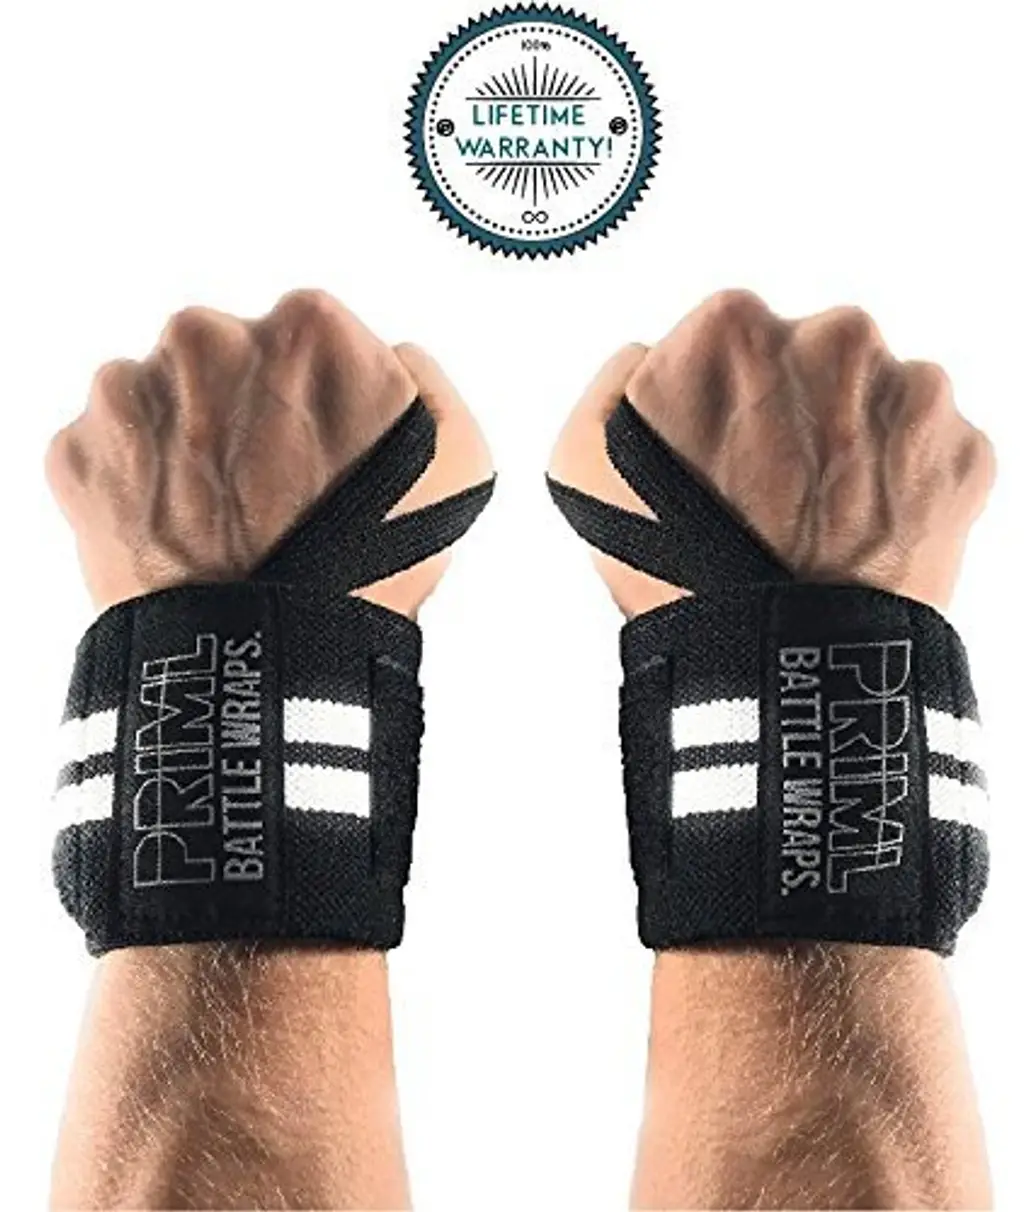 safety glove, hand, glove, finger, wrist,